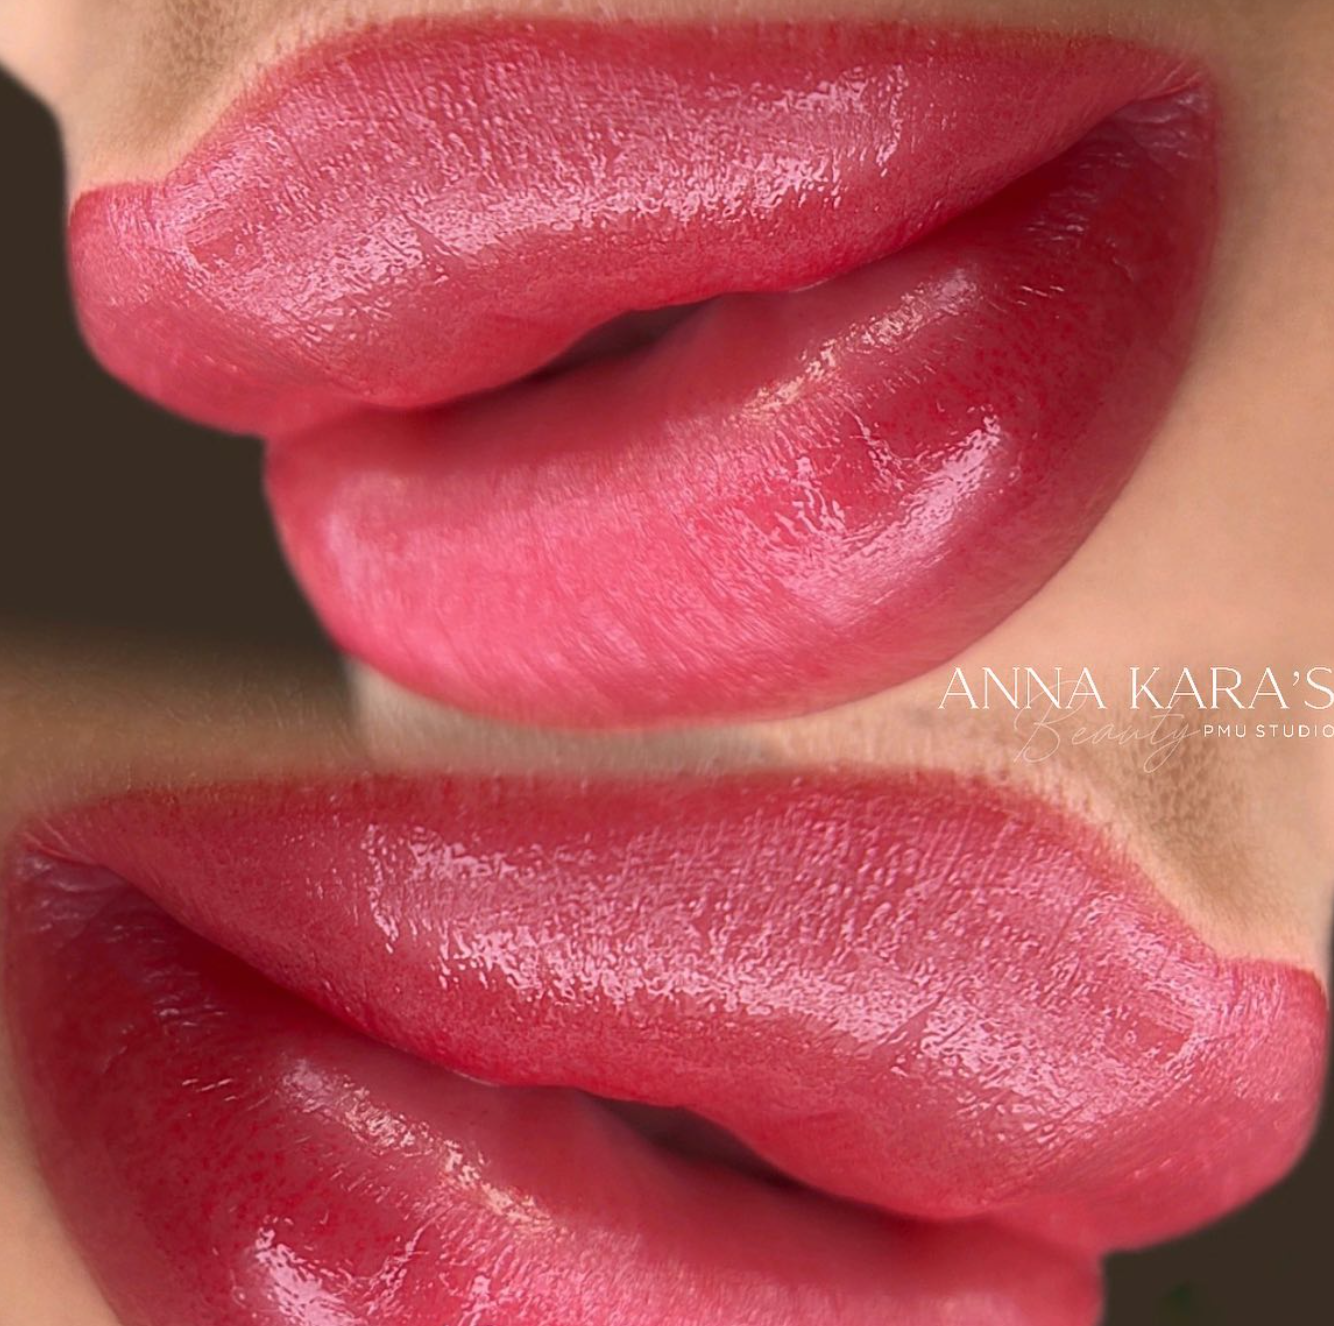 Blog - What is Lip Blushing? - Best Artist by Anna Kara Studio